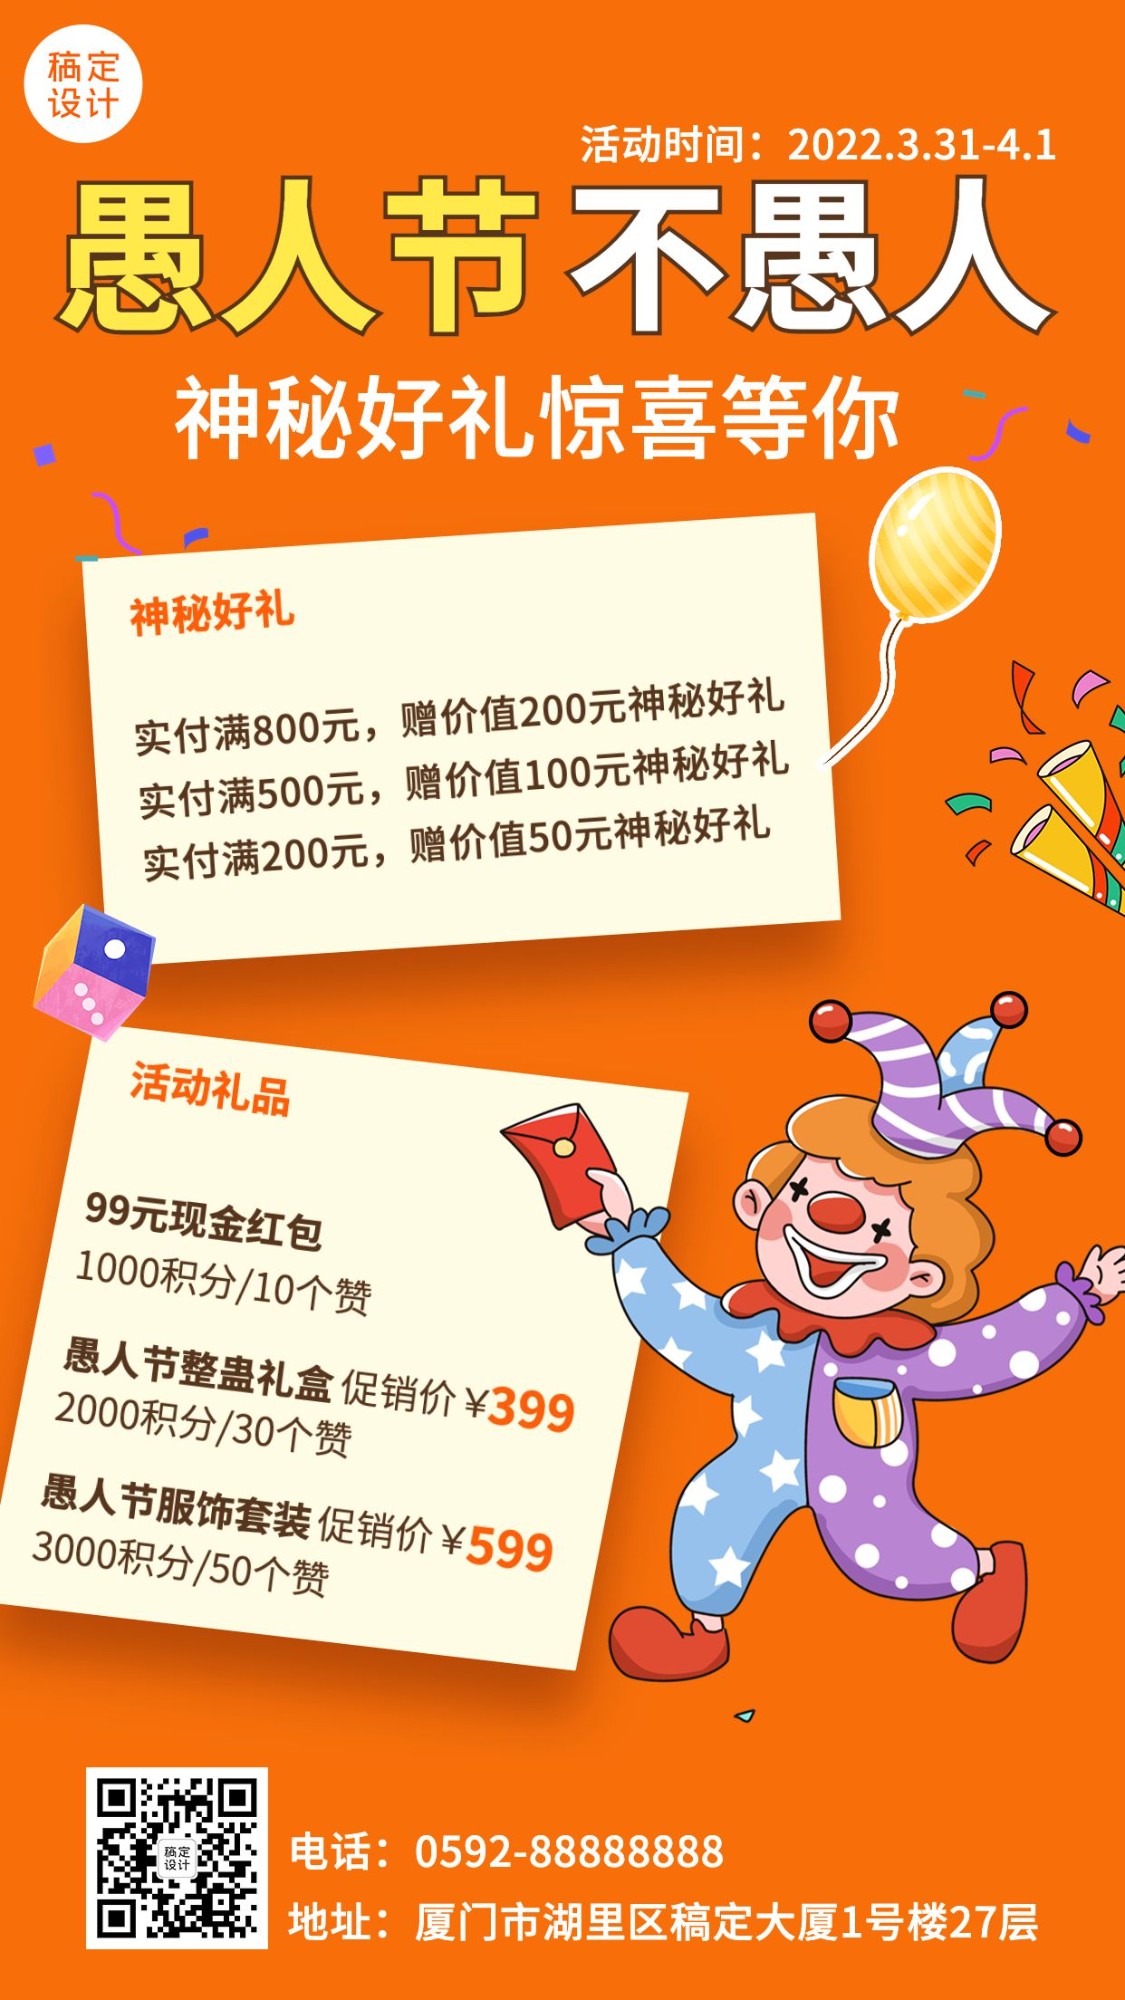 4.1愚人节节日促销活动手机海报预览效果